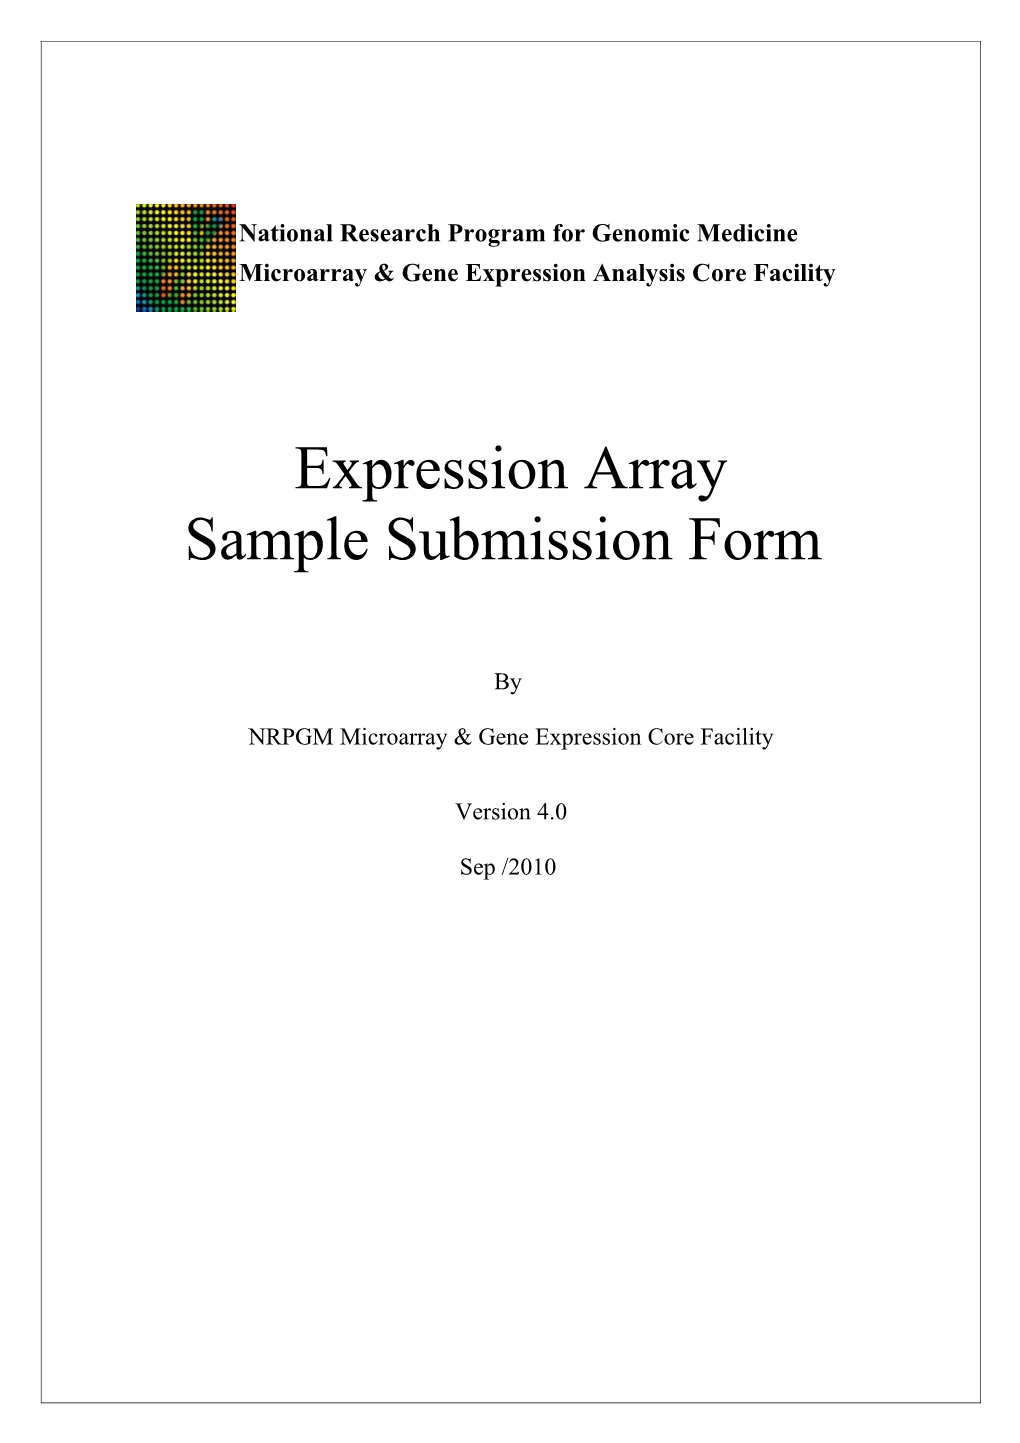 NRPGM Microarray & Gene Expression Core Facility s1